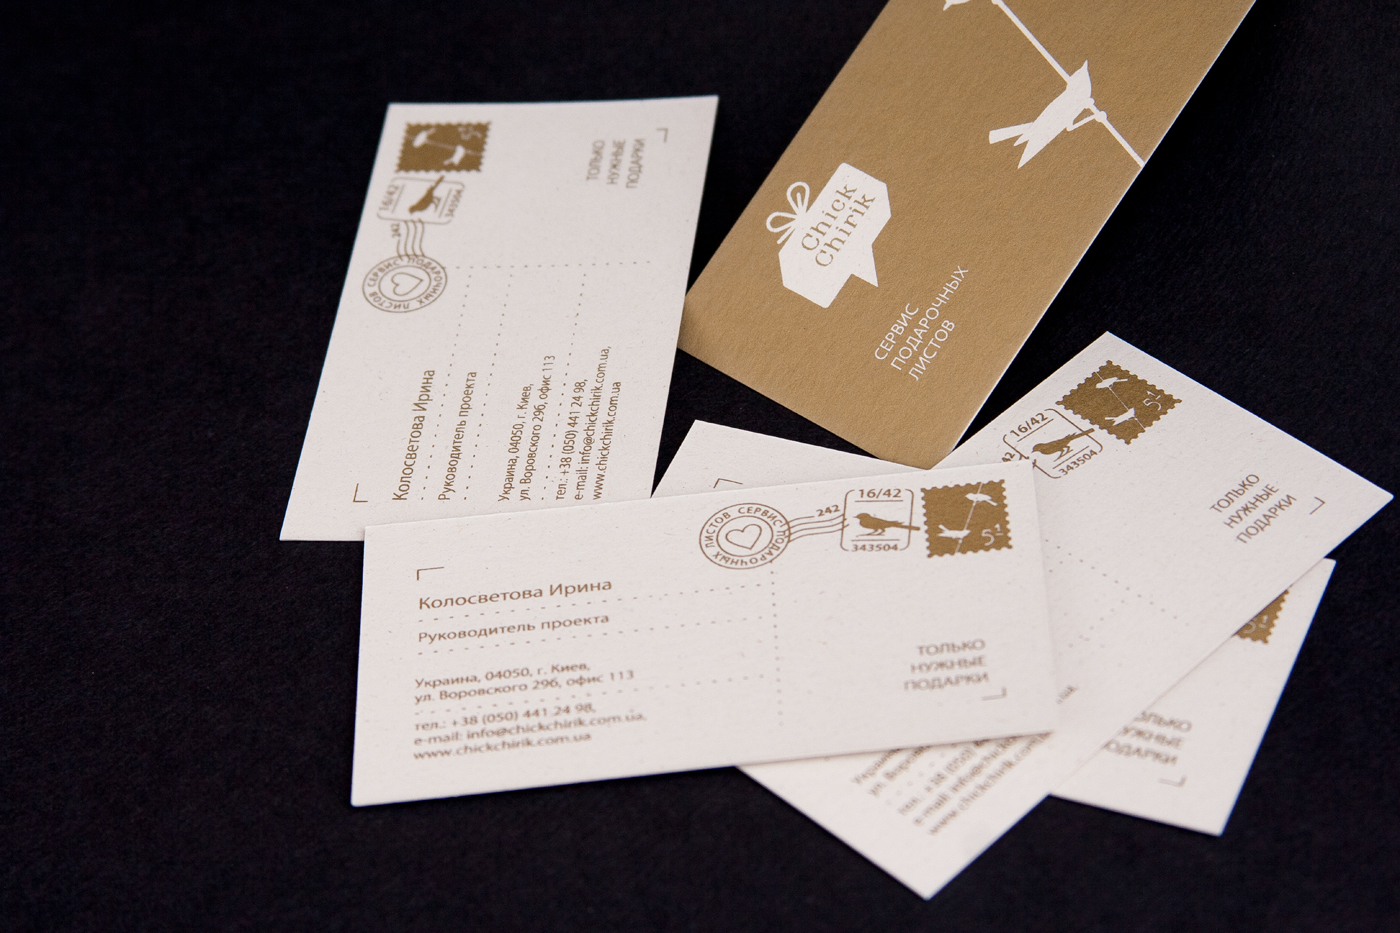 ukraine Business Cards pattern birds pencil envelopes paper bag leaves bubble apple